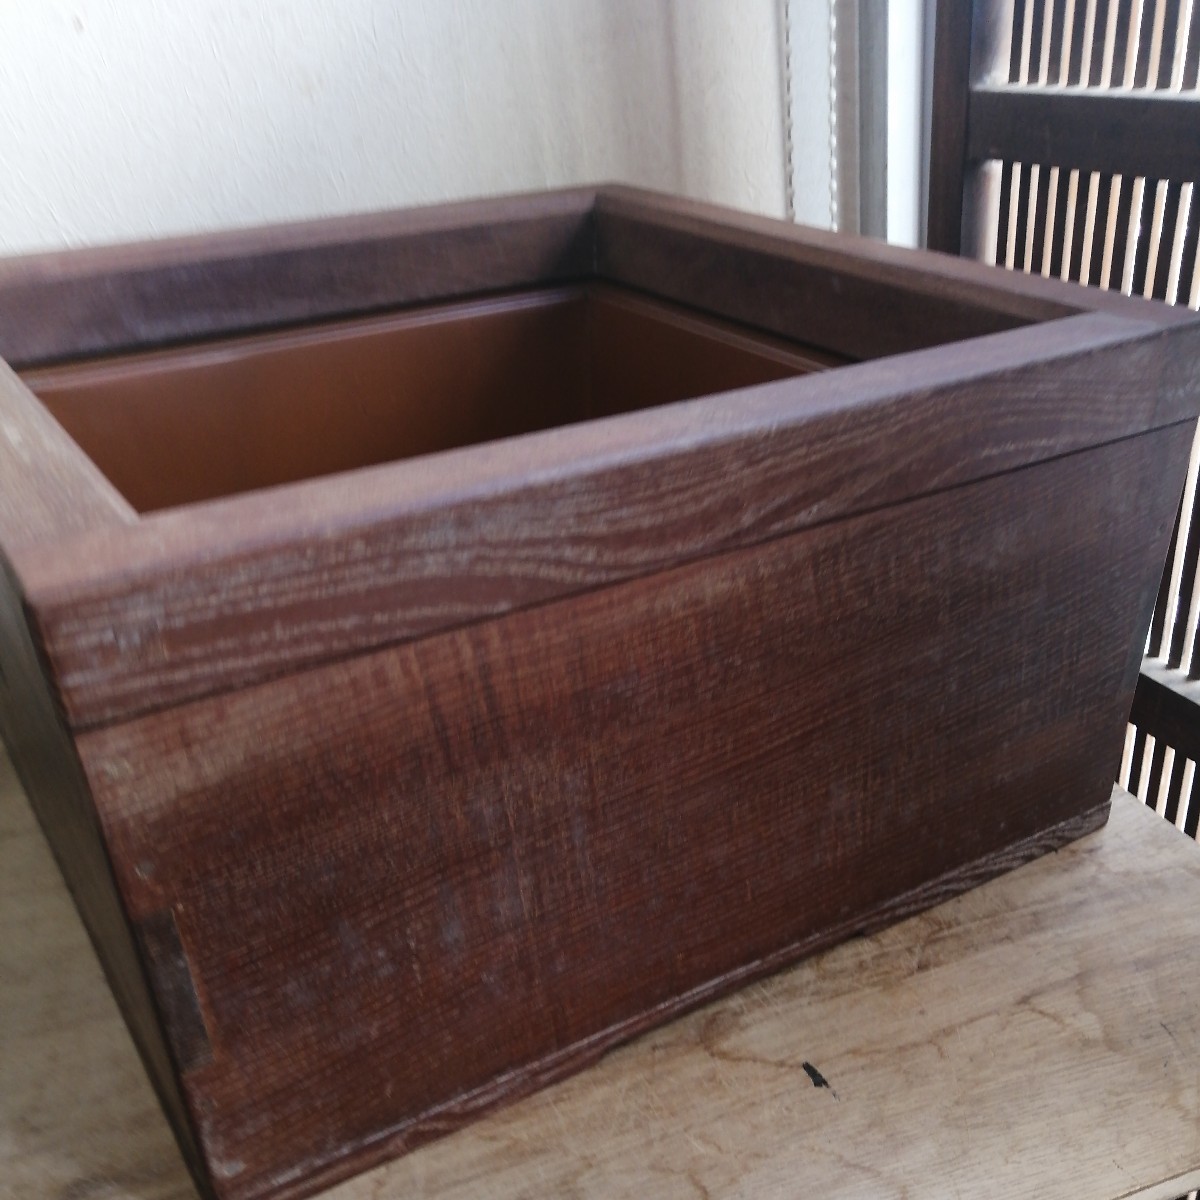 置炉 五徳付 桑 茶道具 炉 内側銅器 茶道 紙箱 - 工芸品